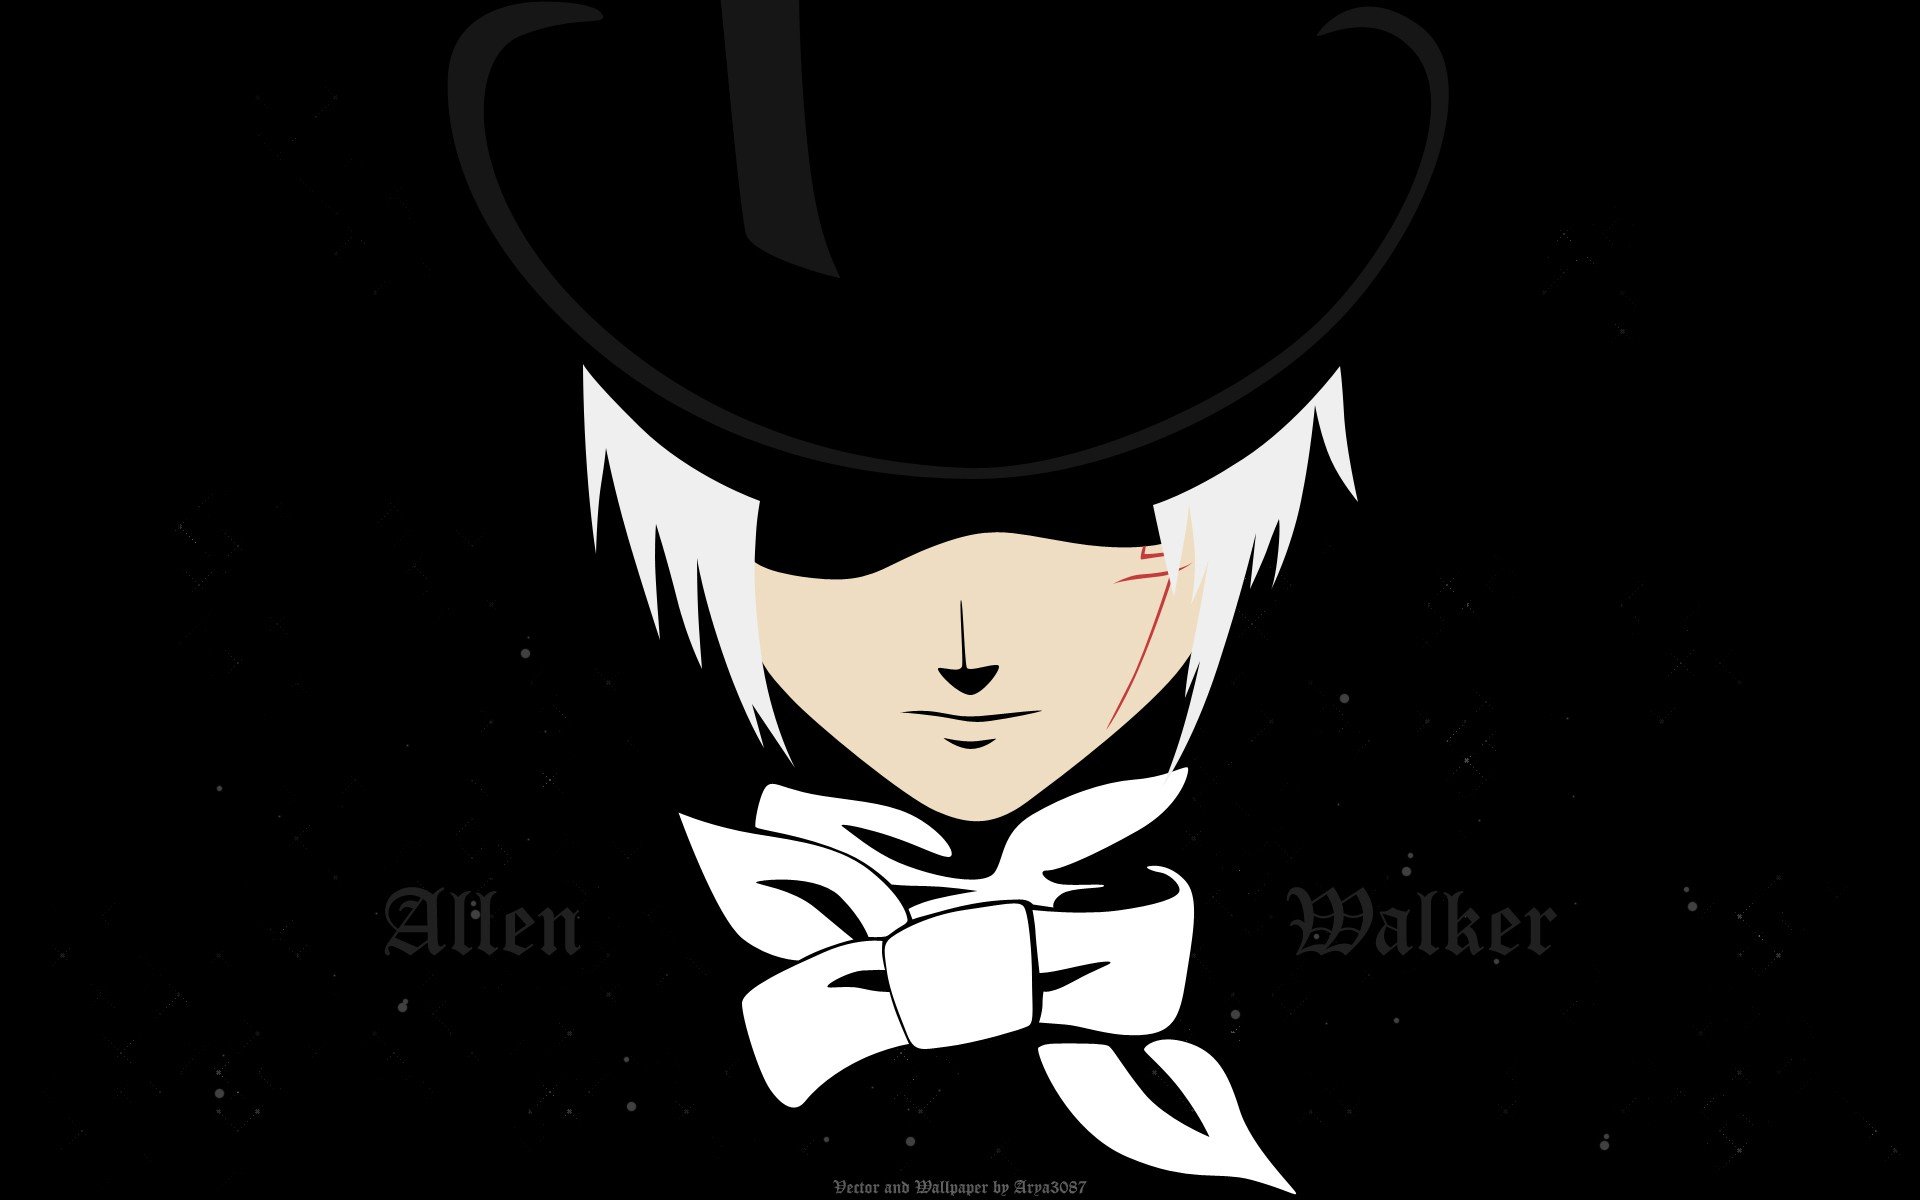 Allen Walker, D.Gray man Wallpaper